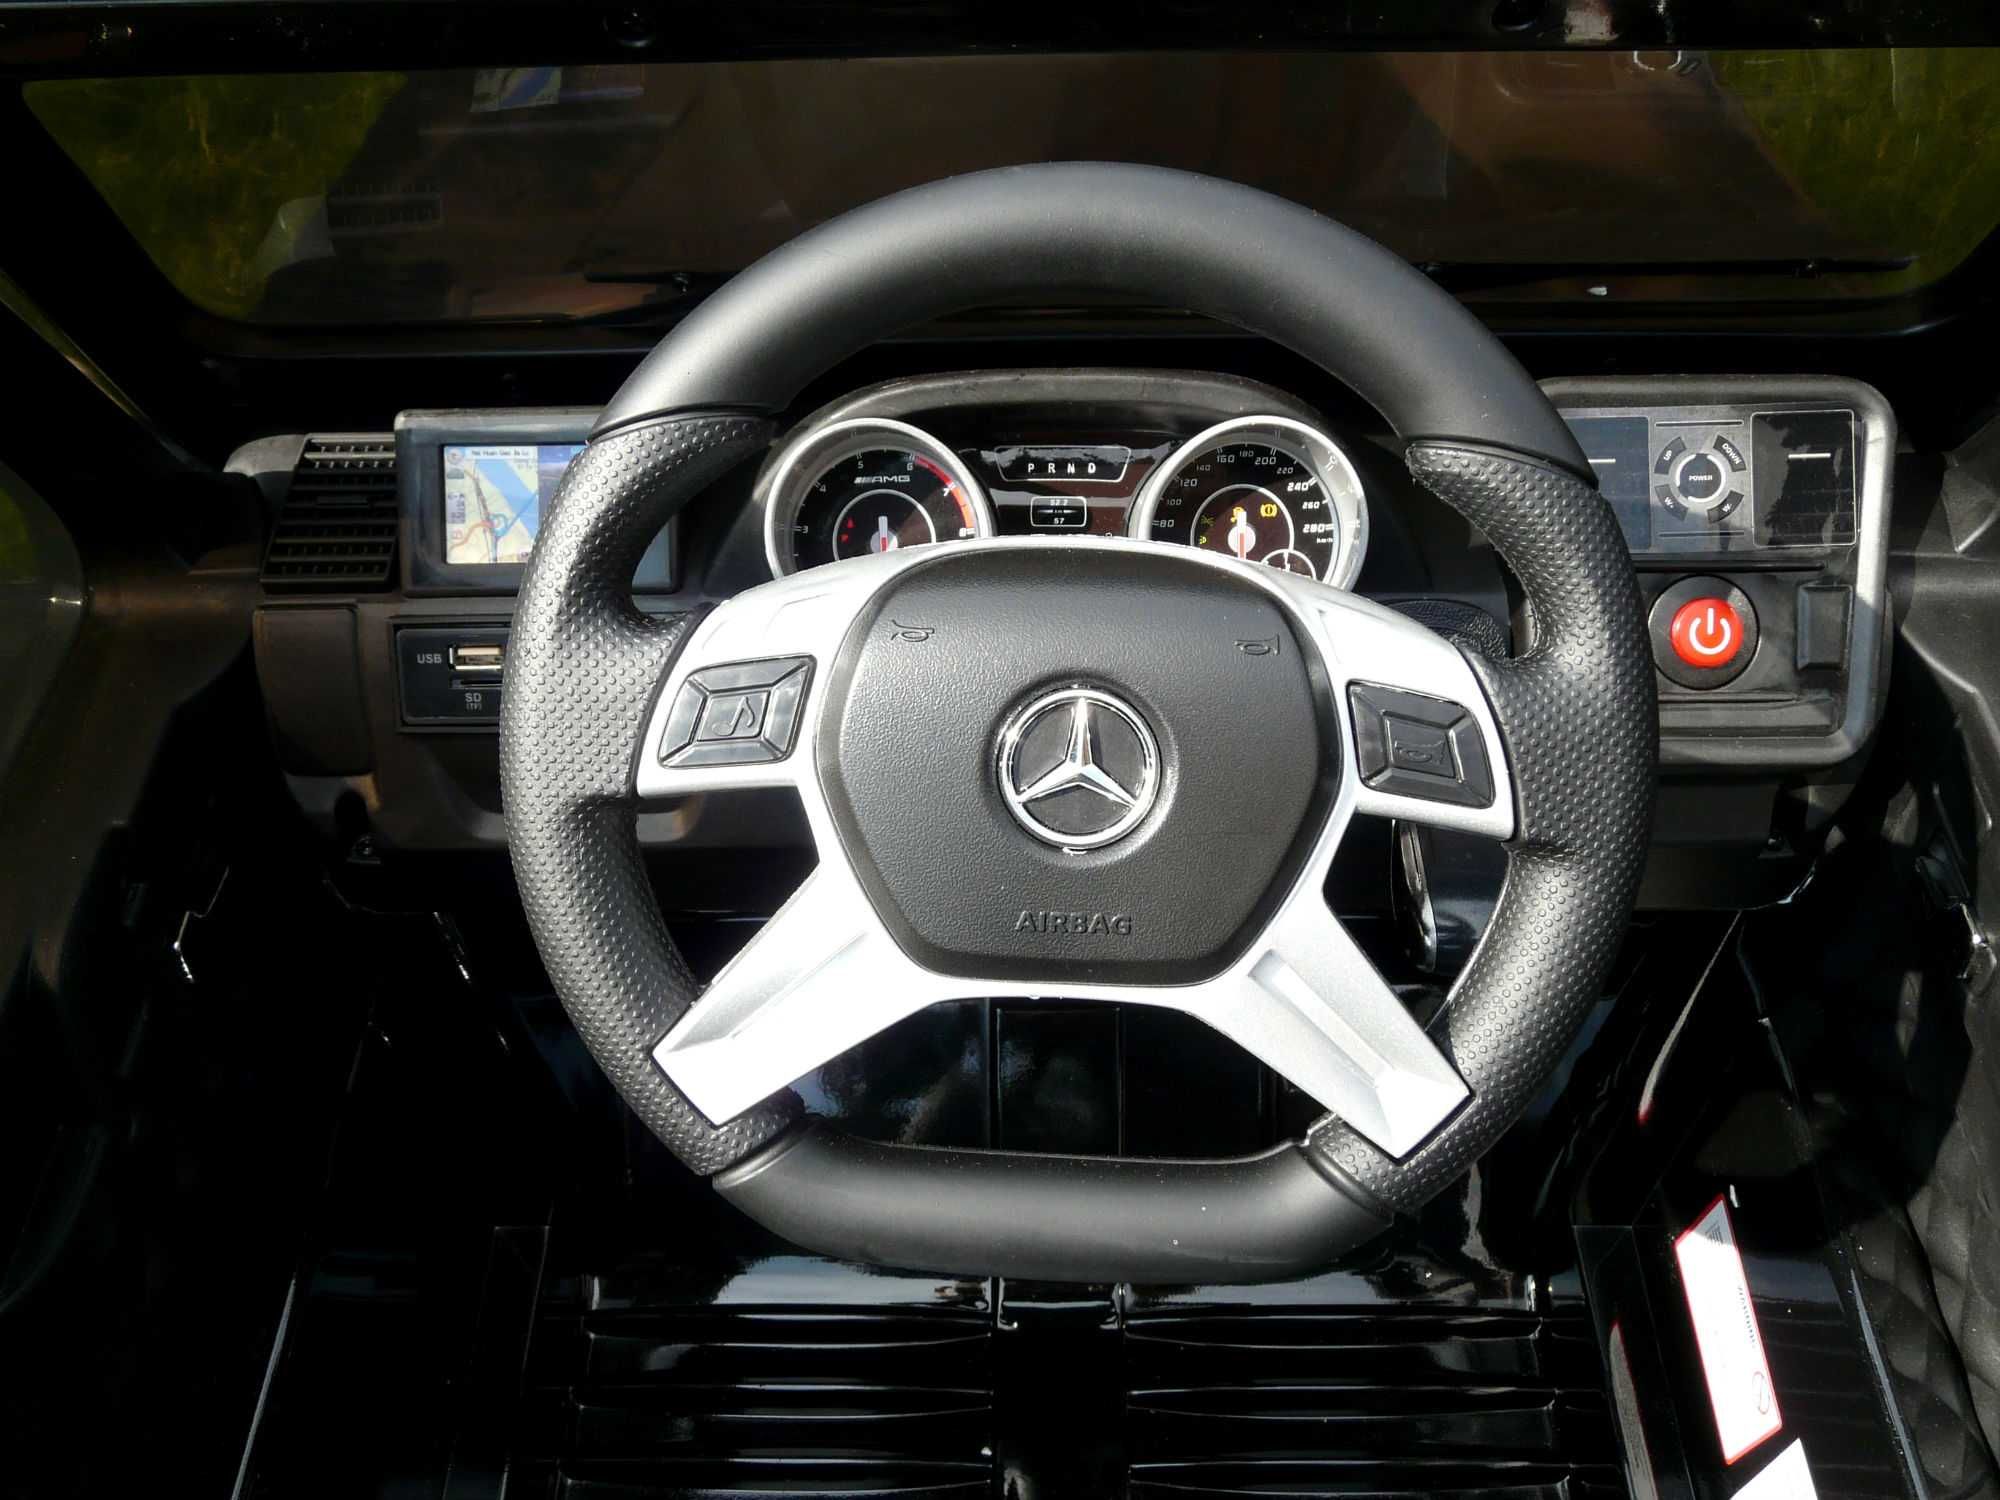 Pojazd Mercedes g65 -12v, eco skóra, koła pianka Eva!! Nowy - Sklep !